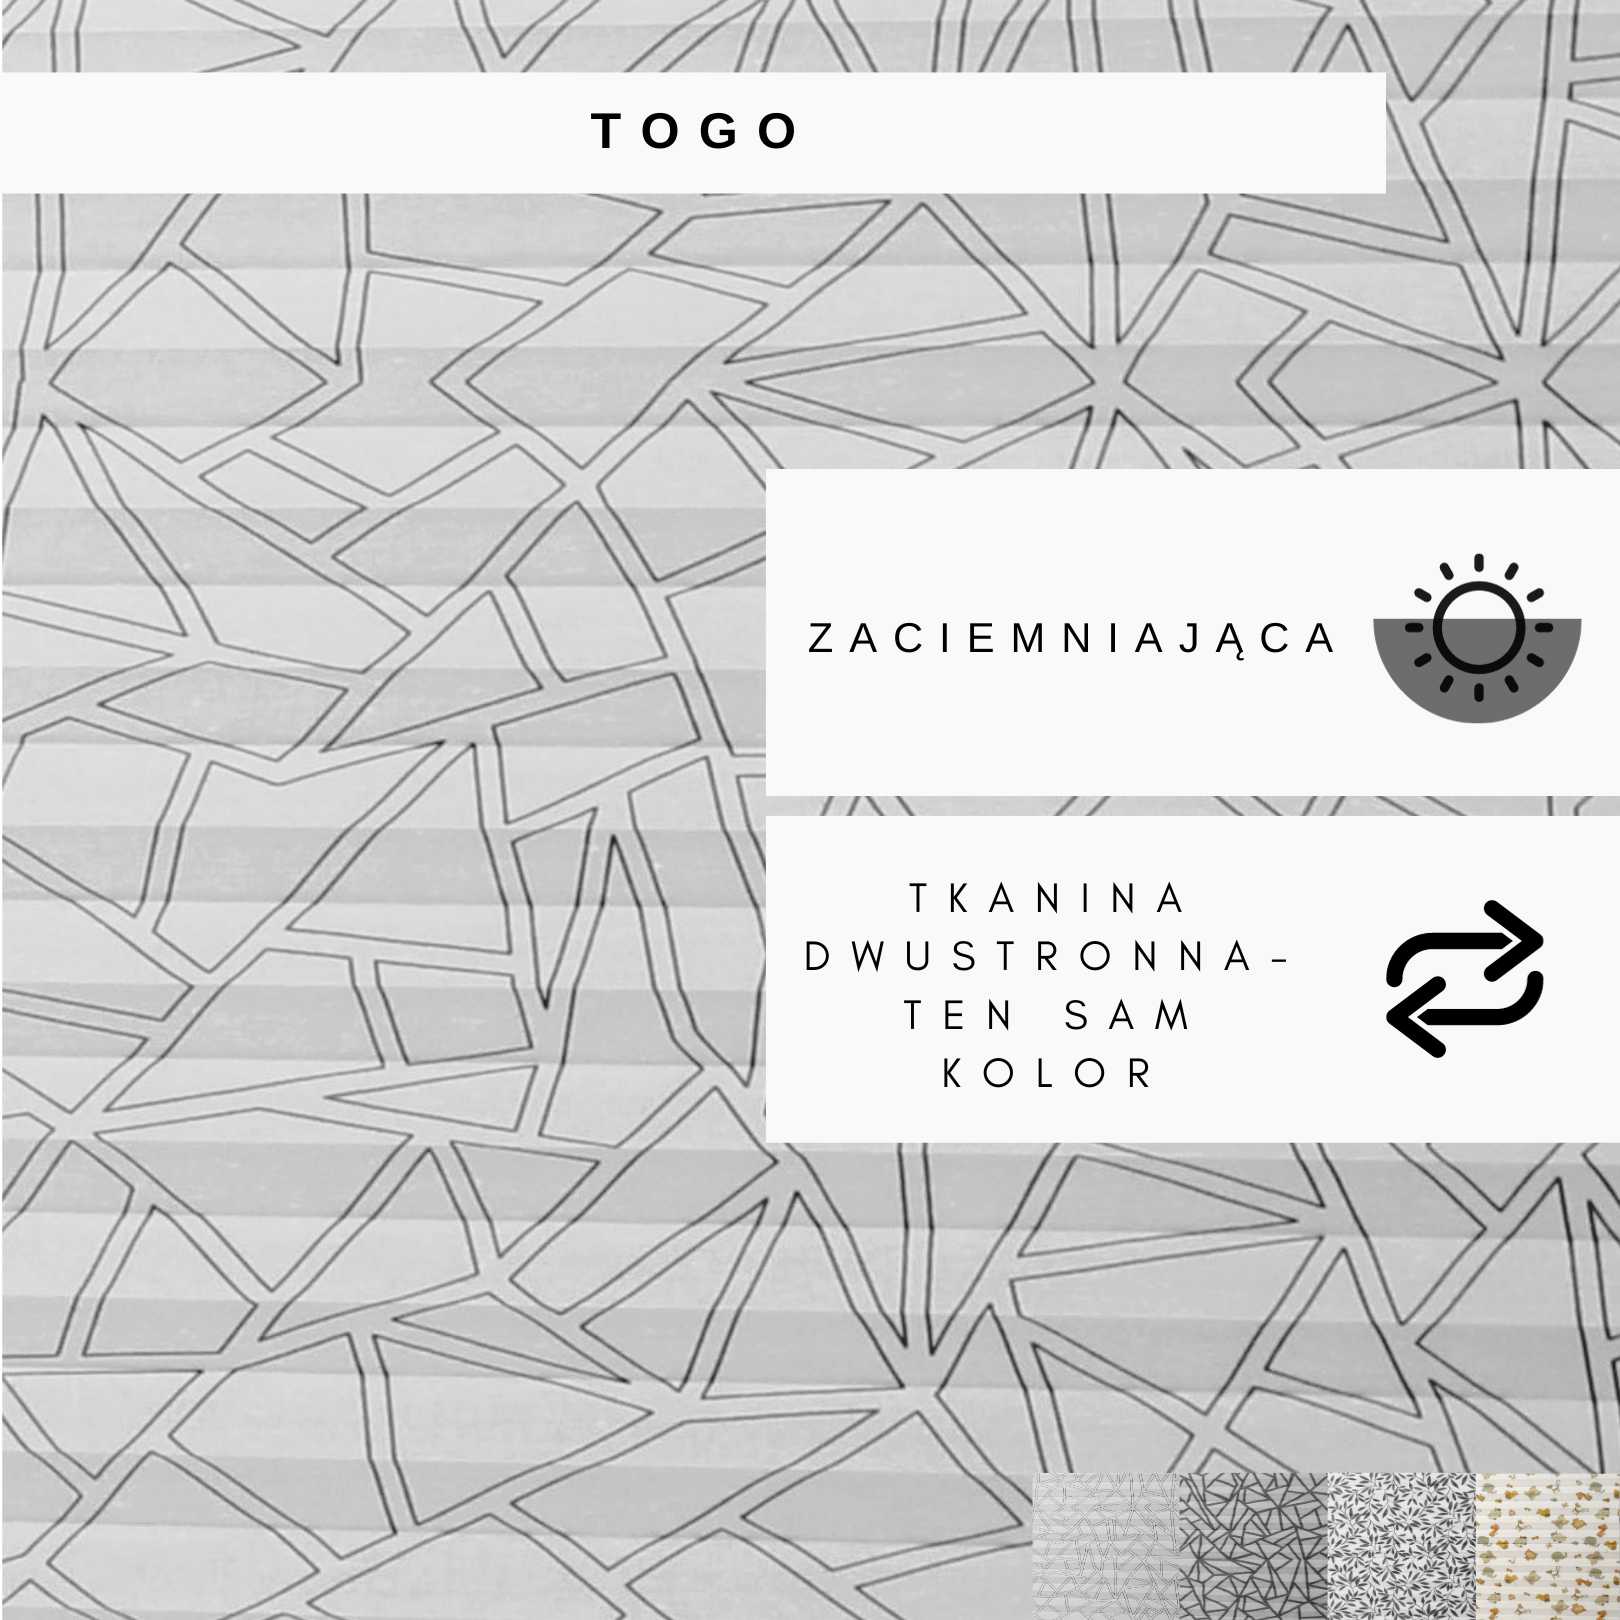 Wzornik - Togo (tkaniny z wzorami)